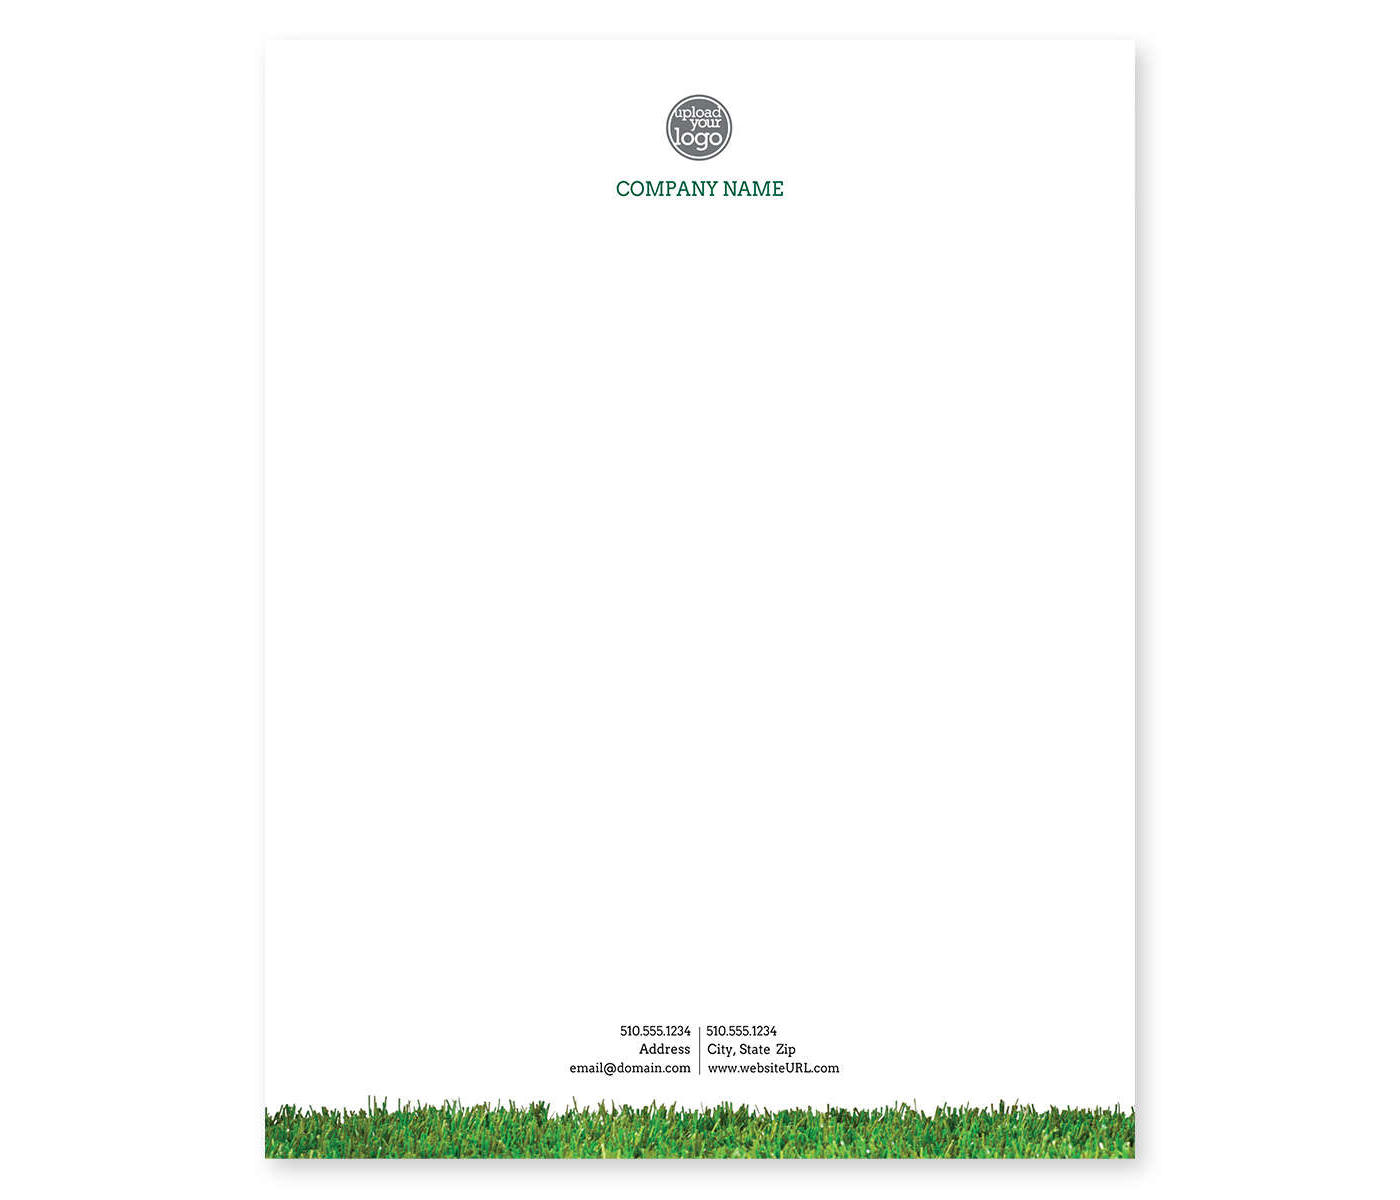 Lush Lawn Letterhead 8-1/2x11 - White